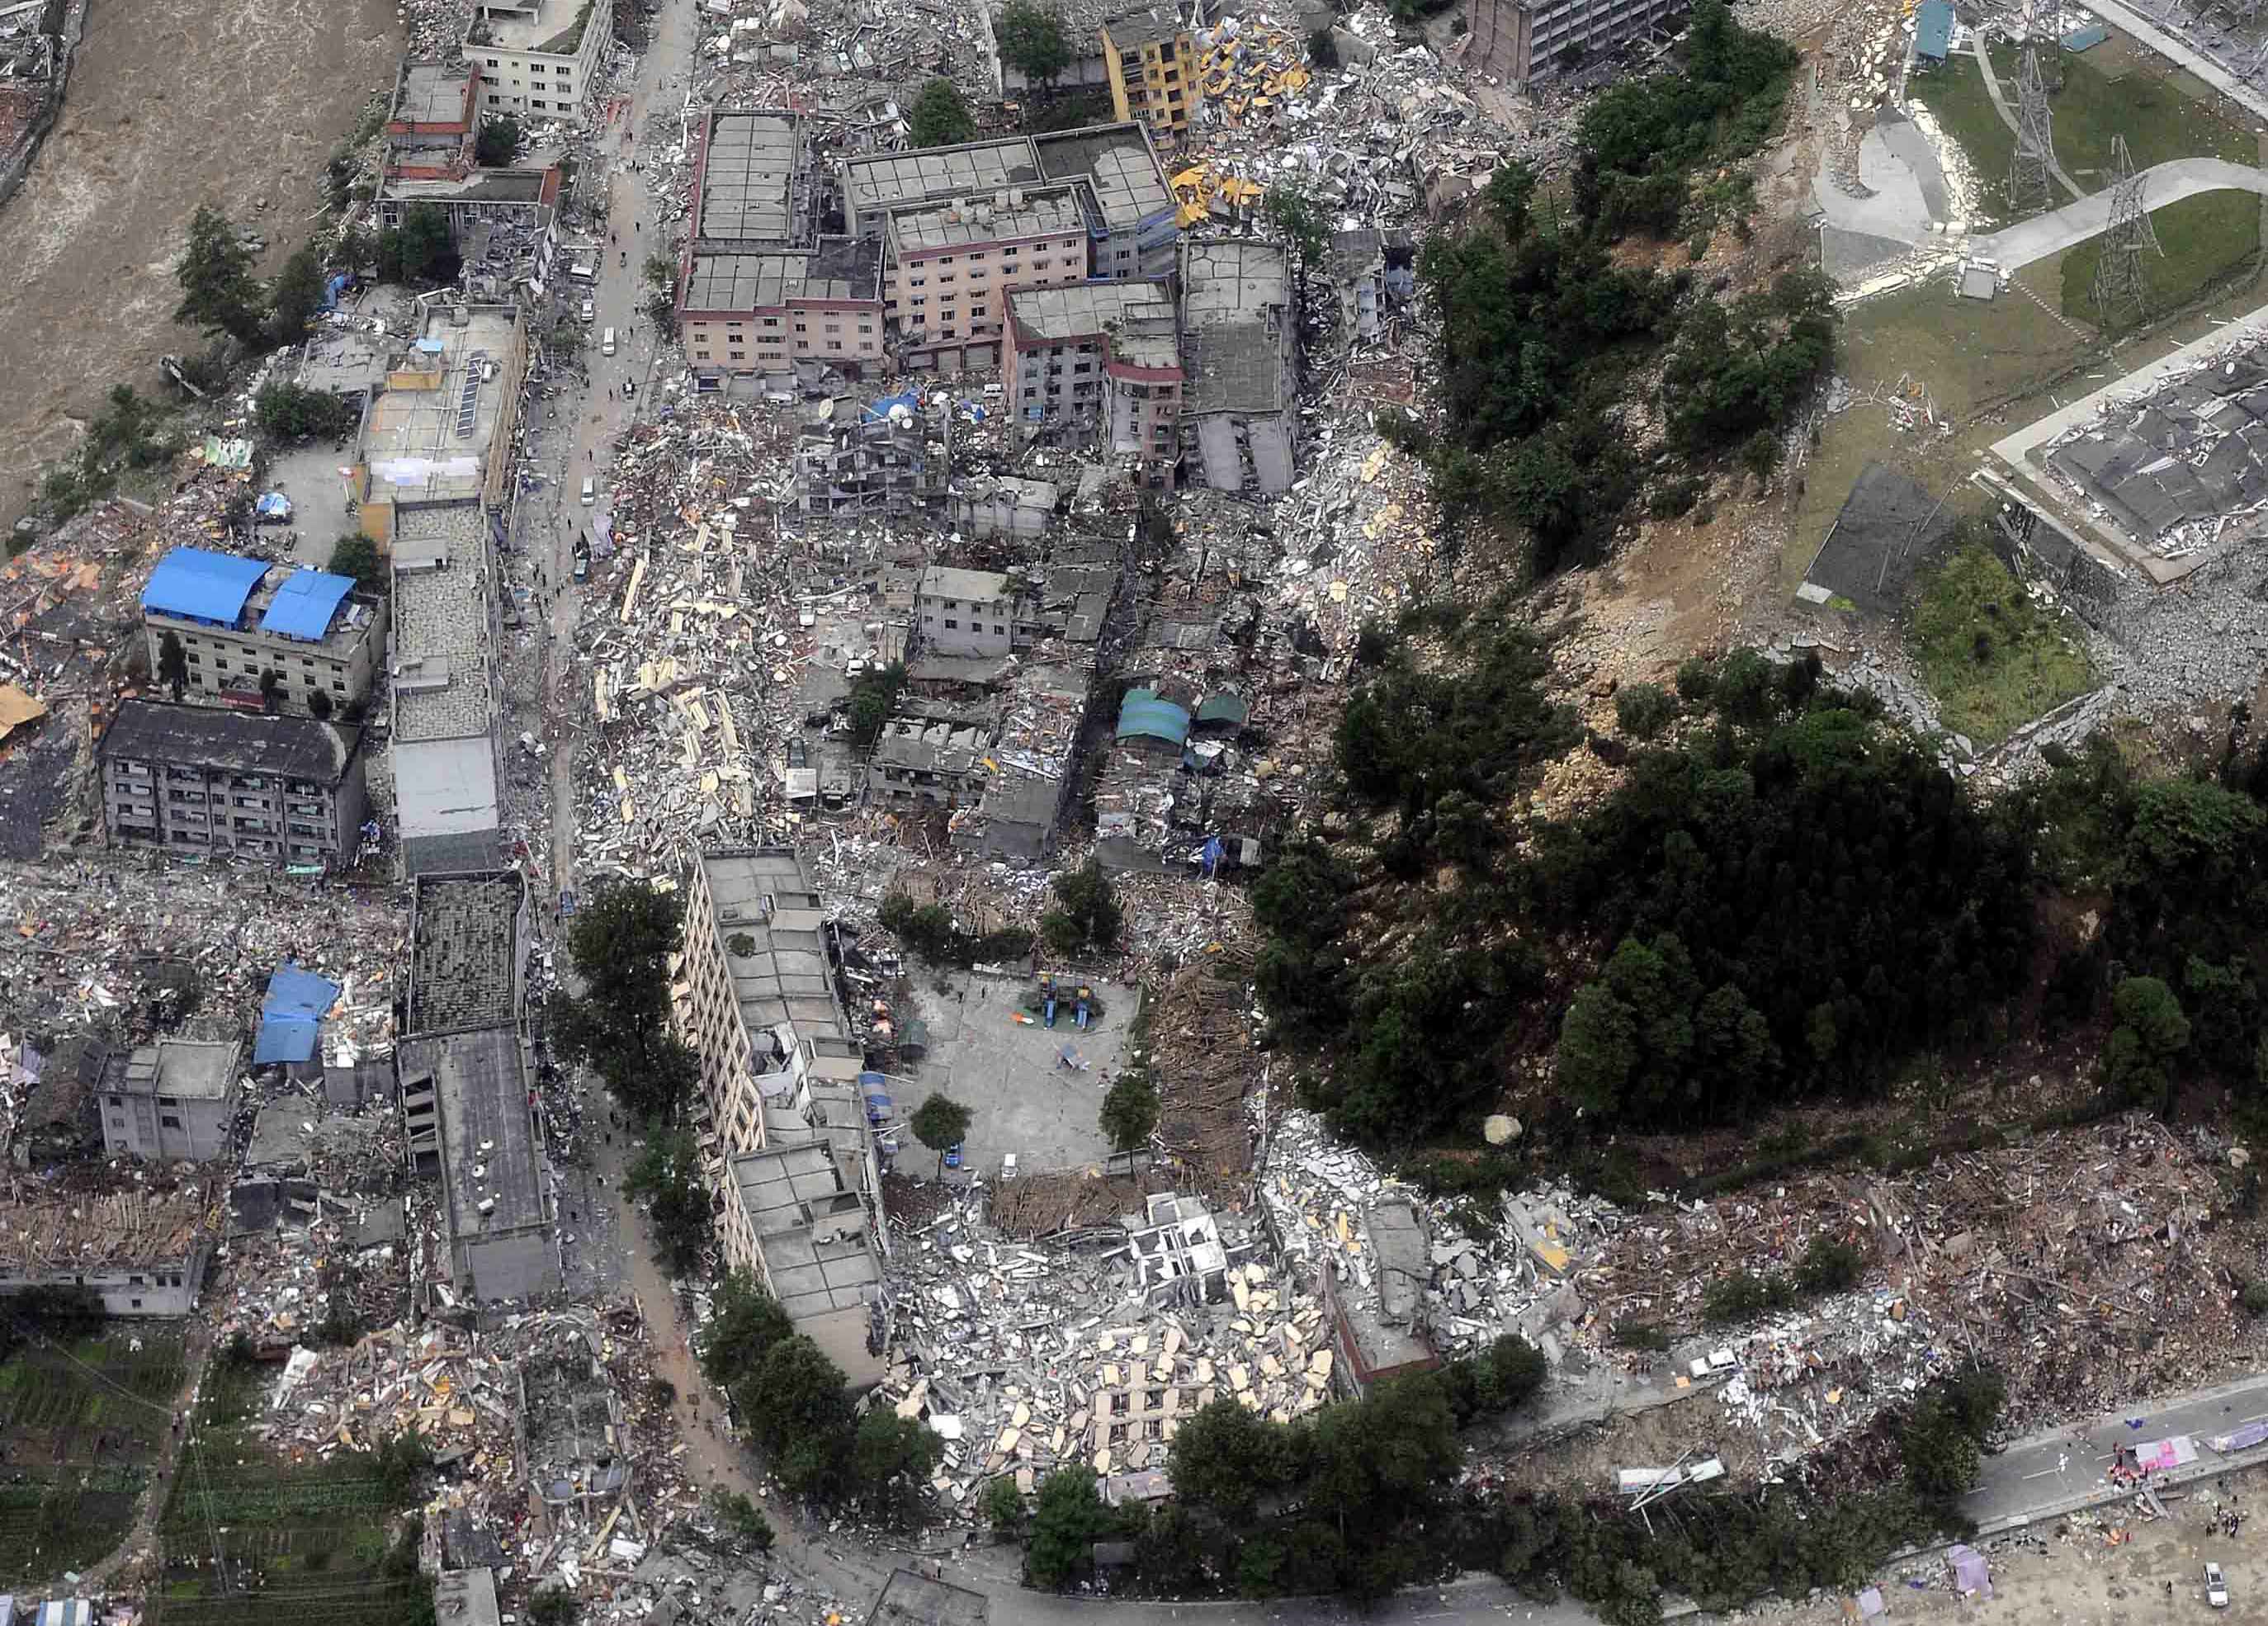 【携程攻略】北川5.12汶川特大地震纪念馆科普体验馆景点,看到如此场景，心情都非常的沉重。想起08年，那短短的几十秒，毁了多…